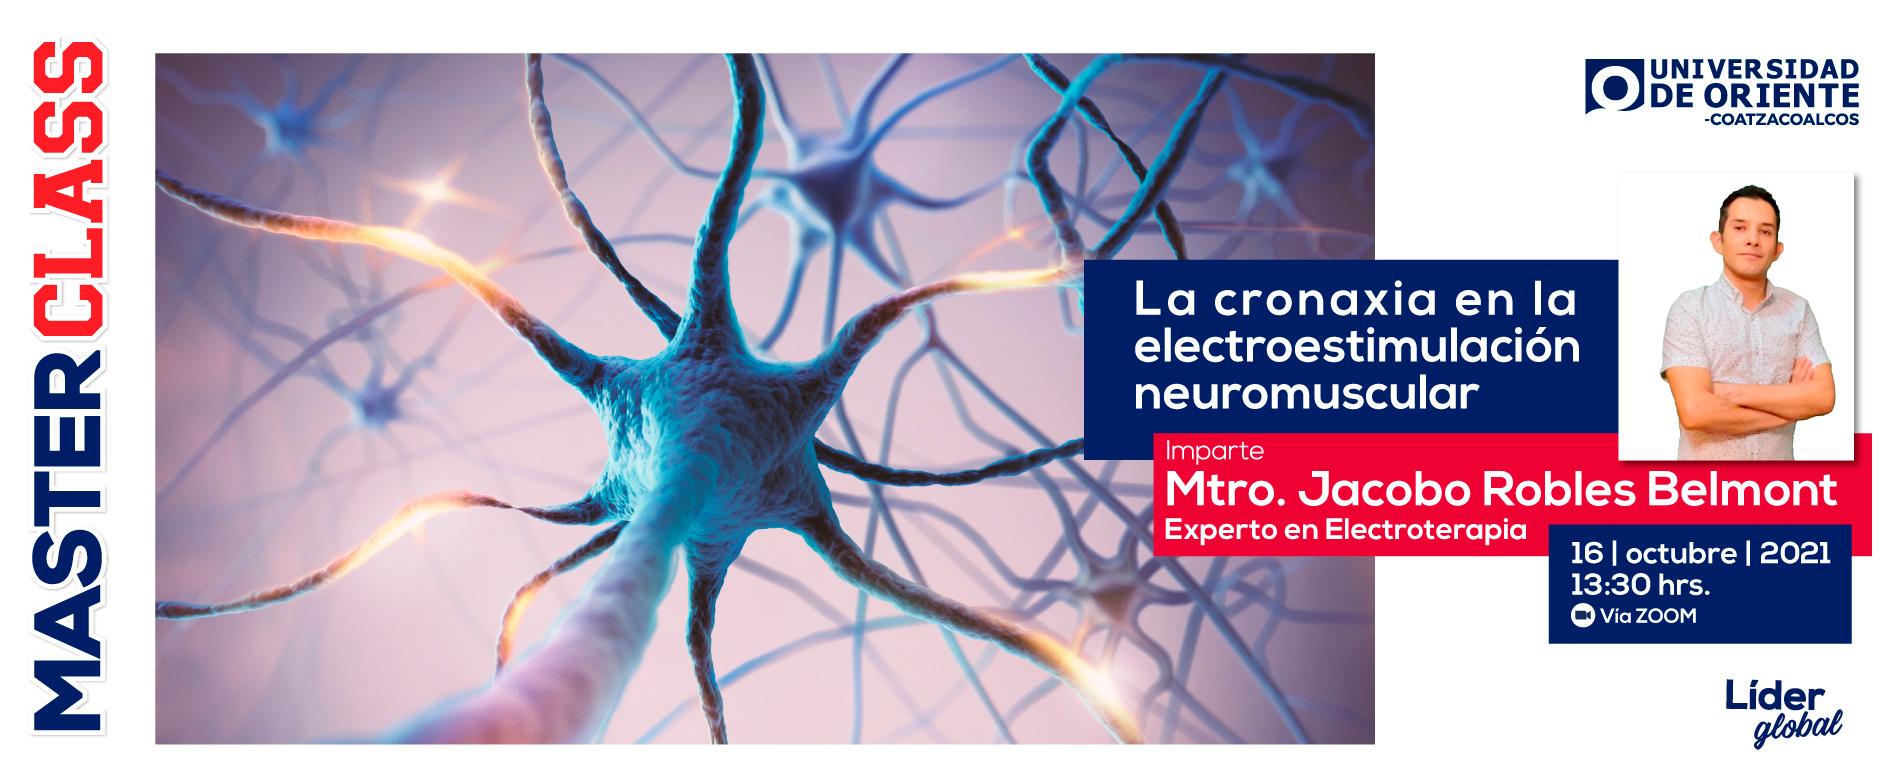 La cronaxia en la electroestimulación neuromuscular